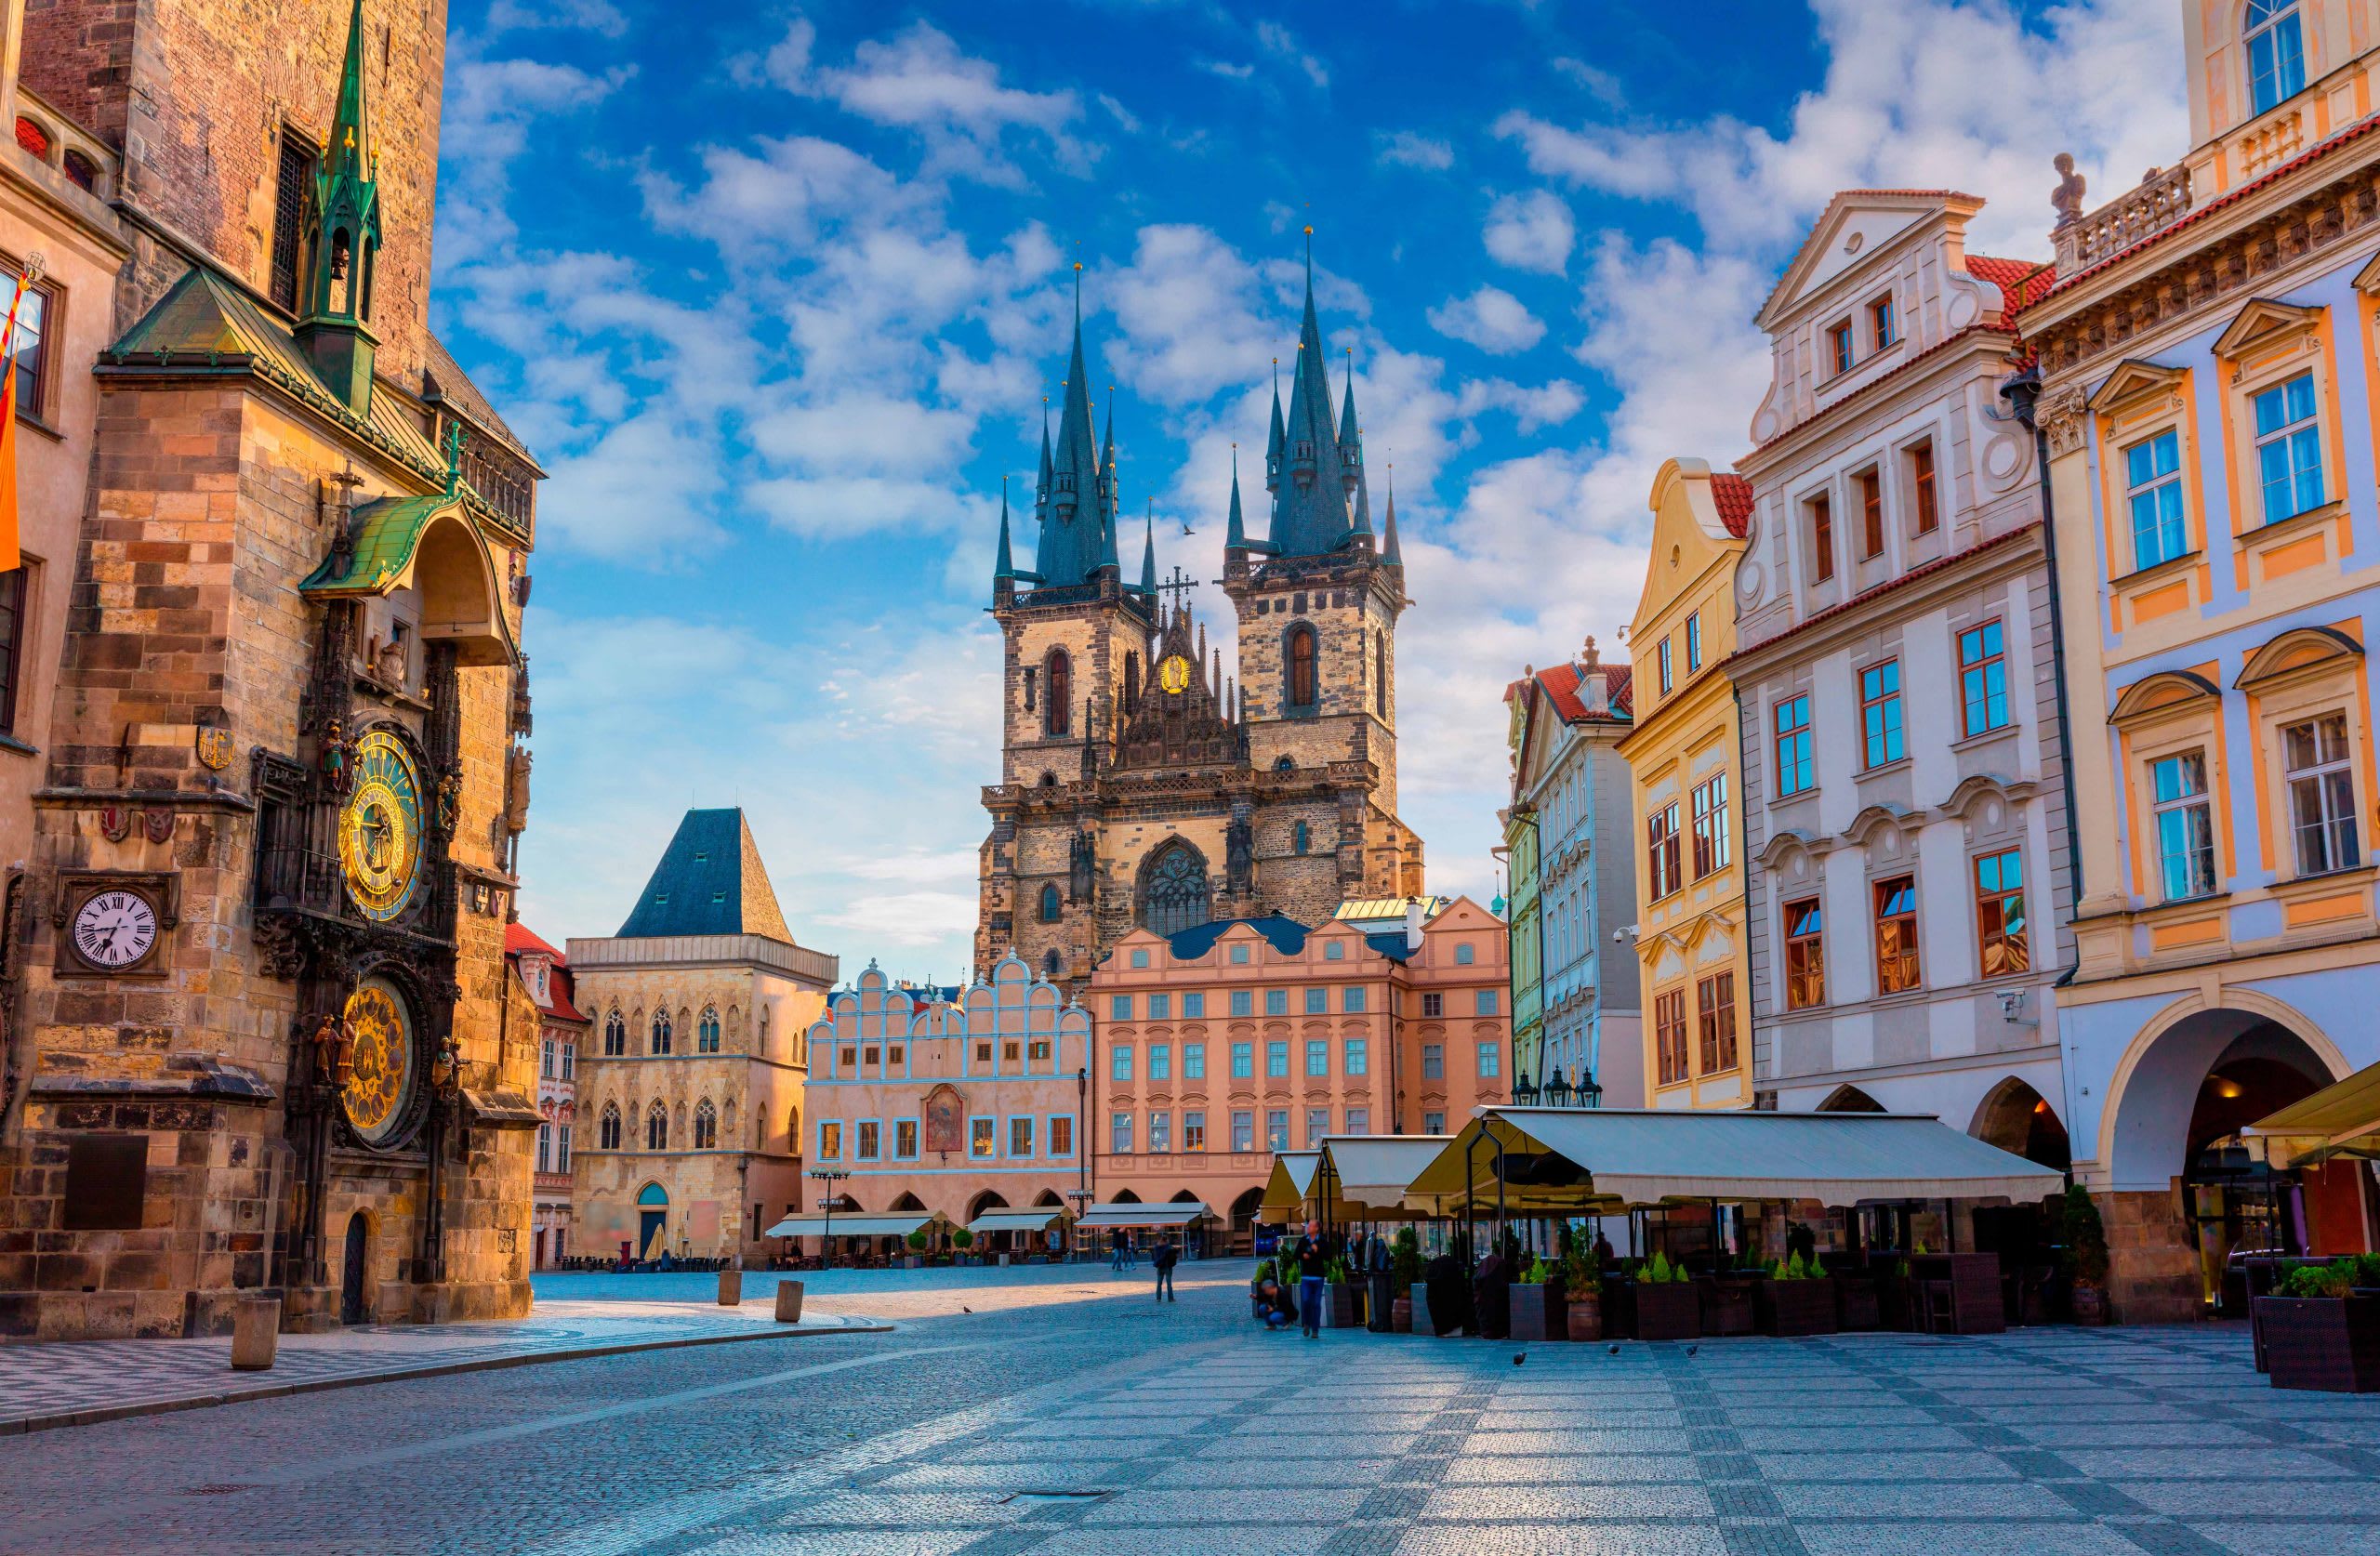 Староместская площадь — старинная площадь Праги, расположенная в историческом центре города. Источник: shutterstock